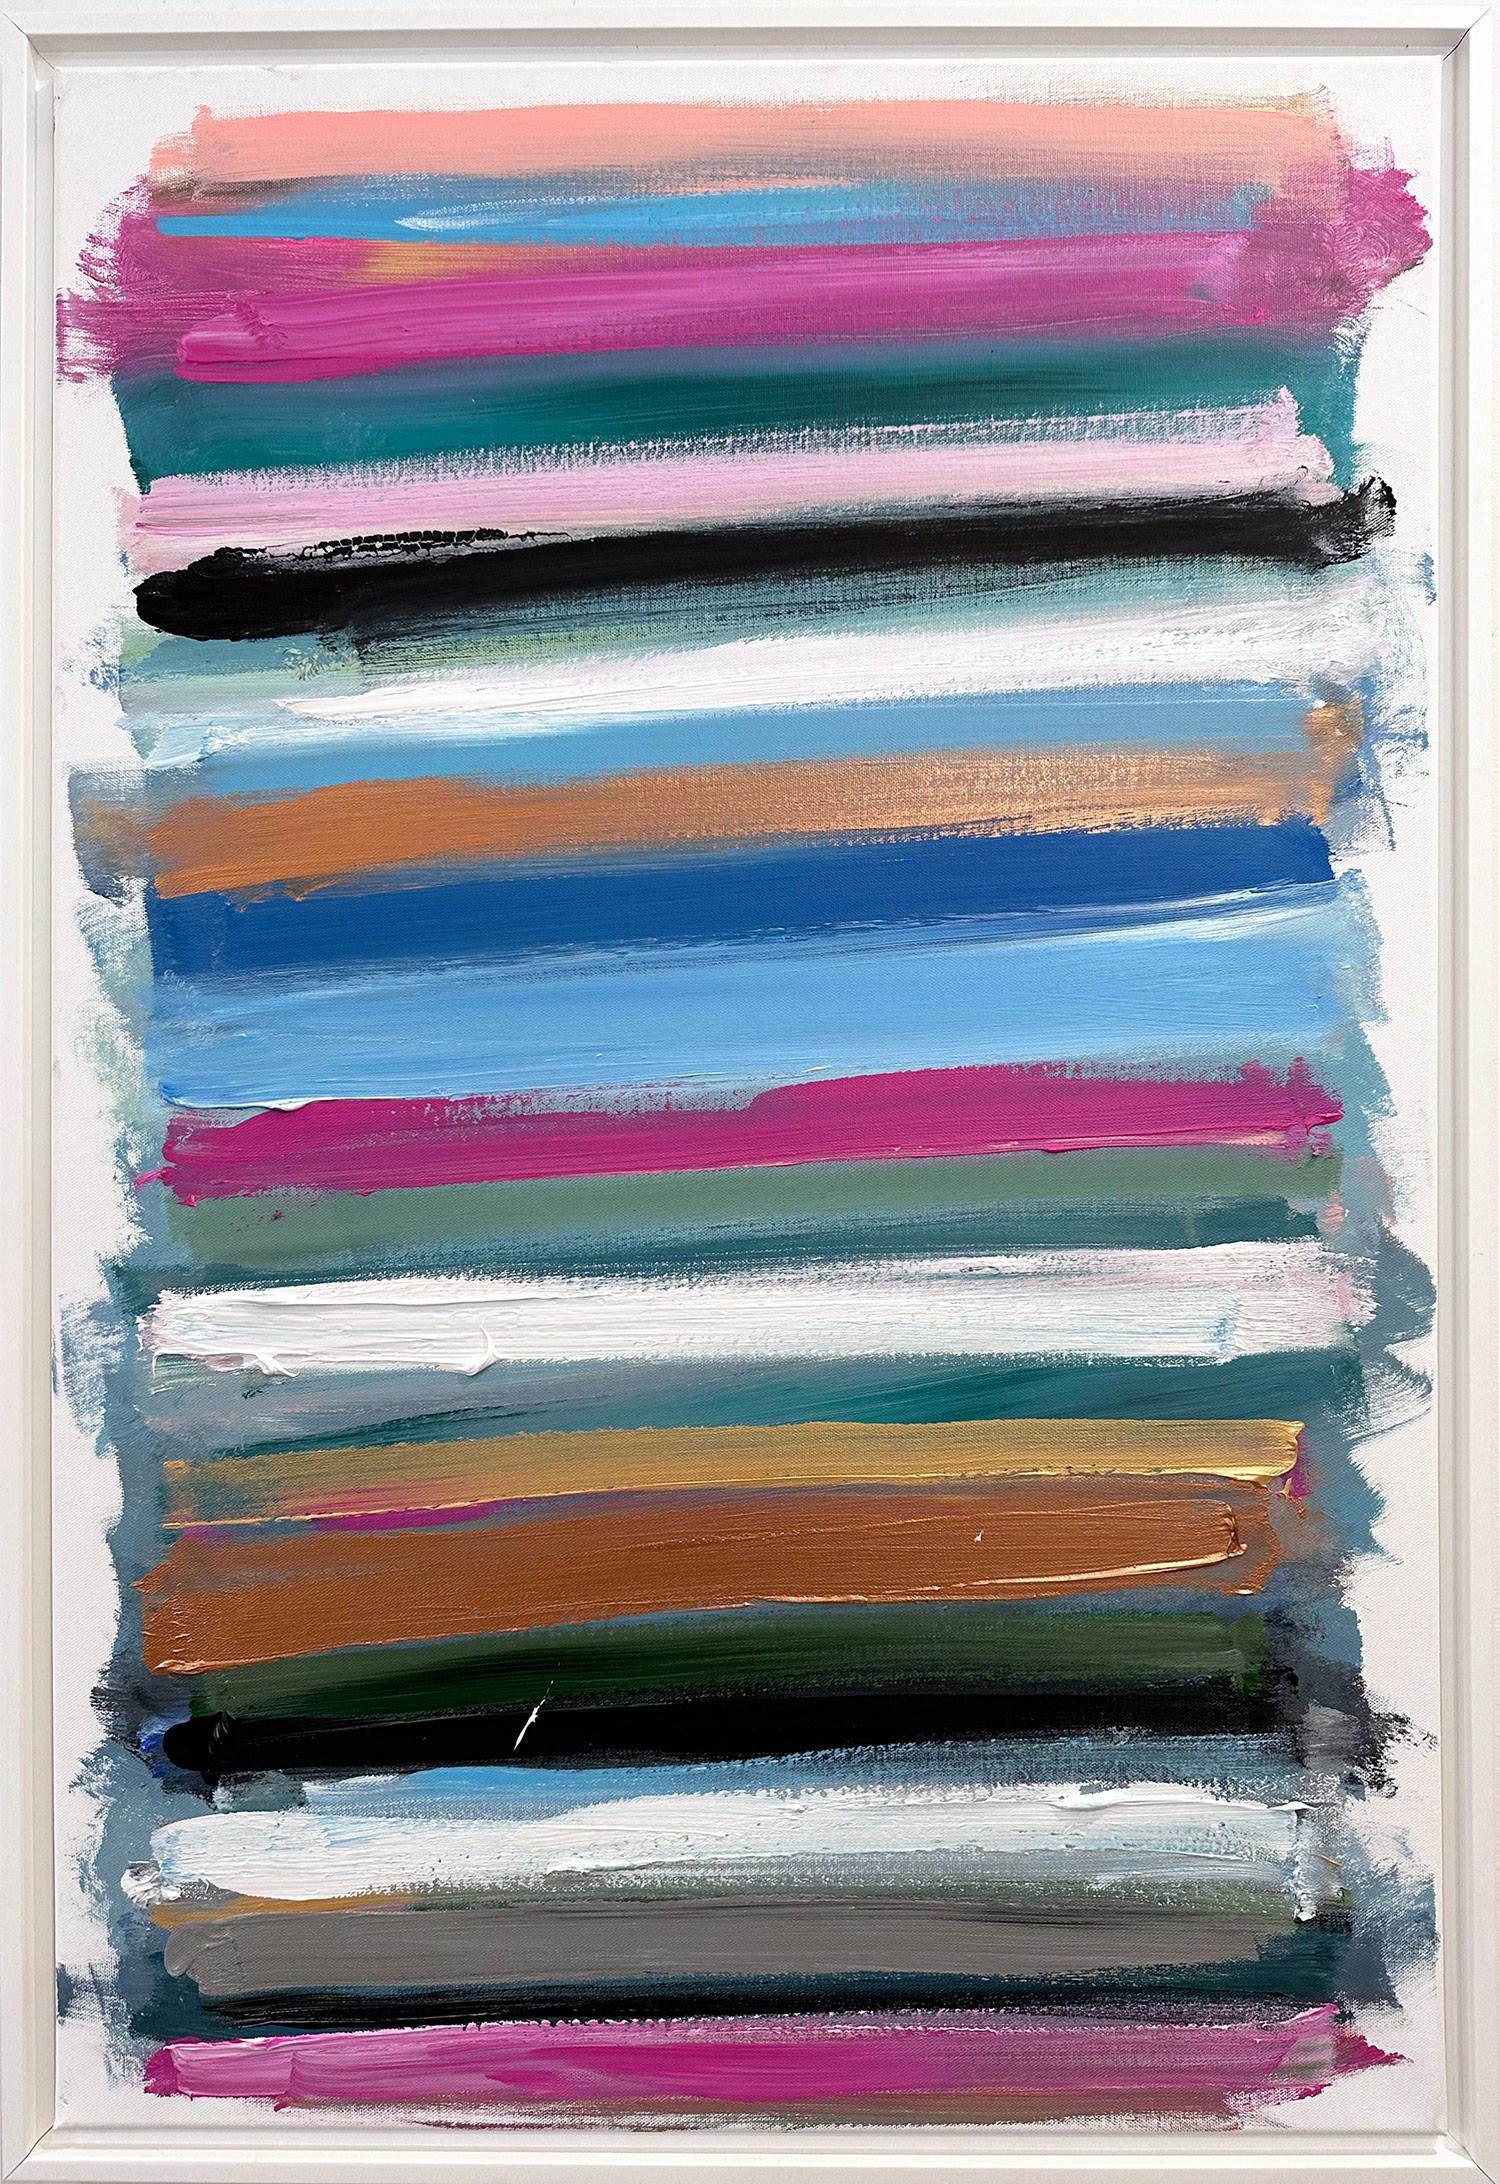 Abstract Painting Cindy Shaoul - "Mon horizon - Paris la nuit" Champ de couleurs abstraites Peinture sur toile contemporaine